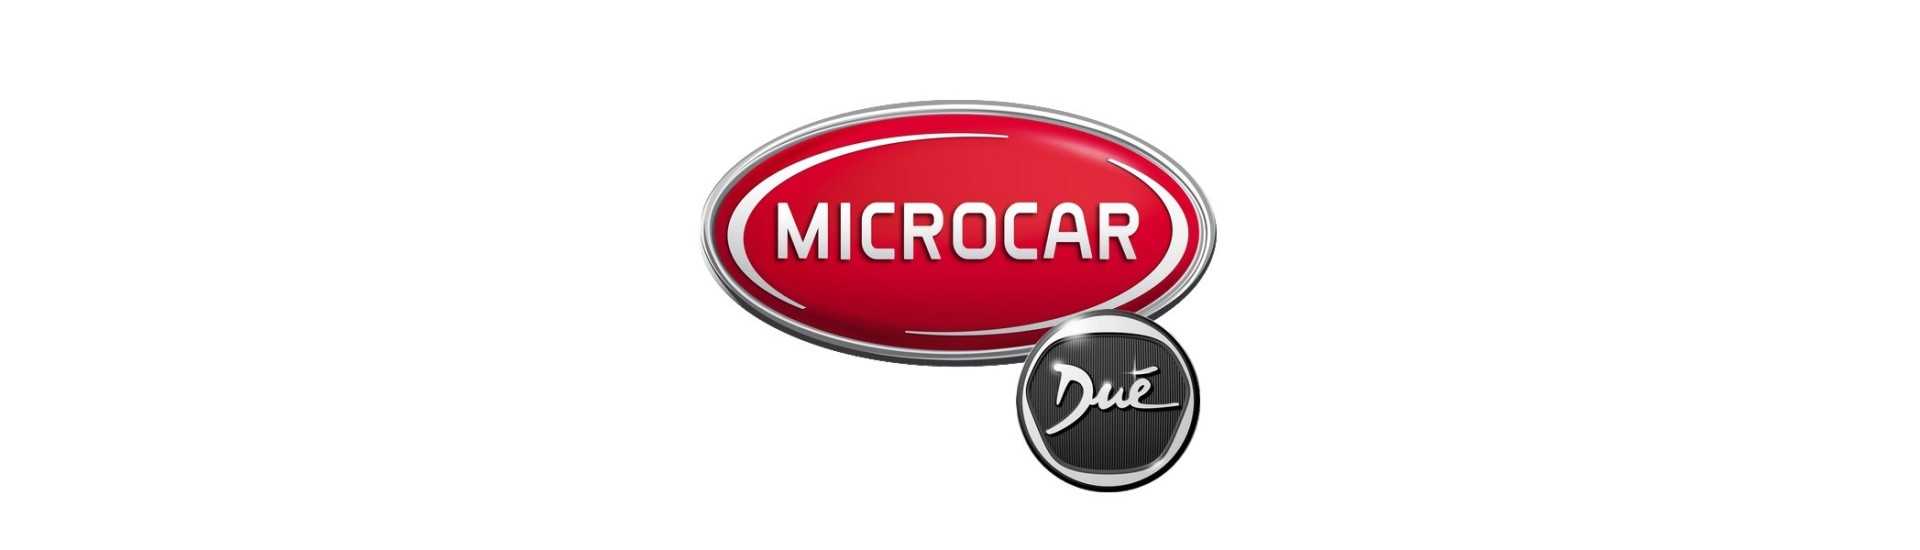 Kit entretien au meilleur prix pour voiture sans permis Microcar Dué